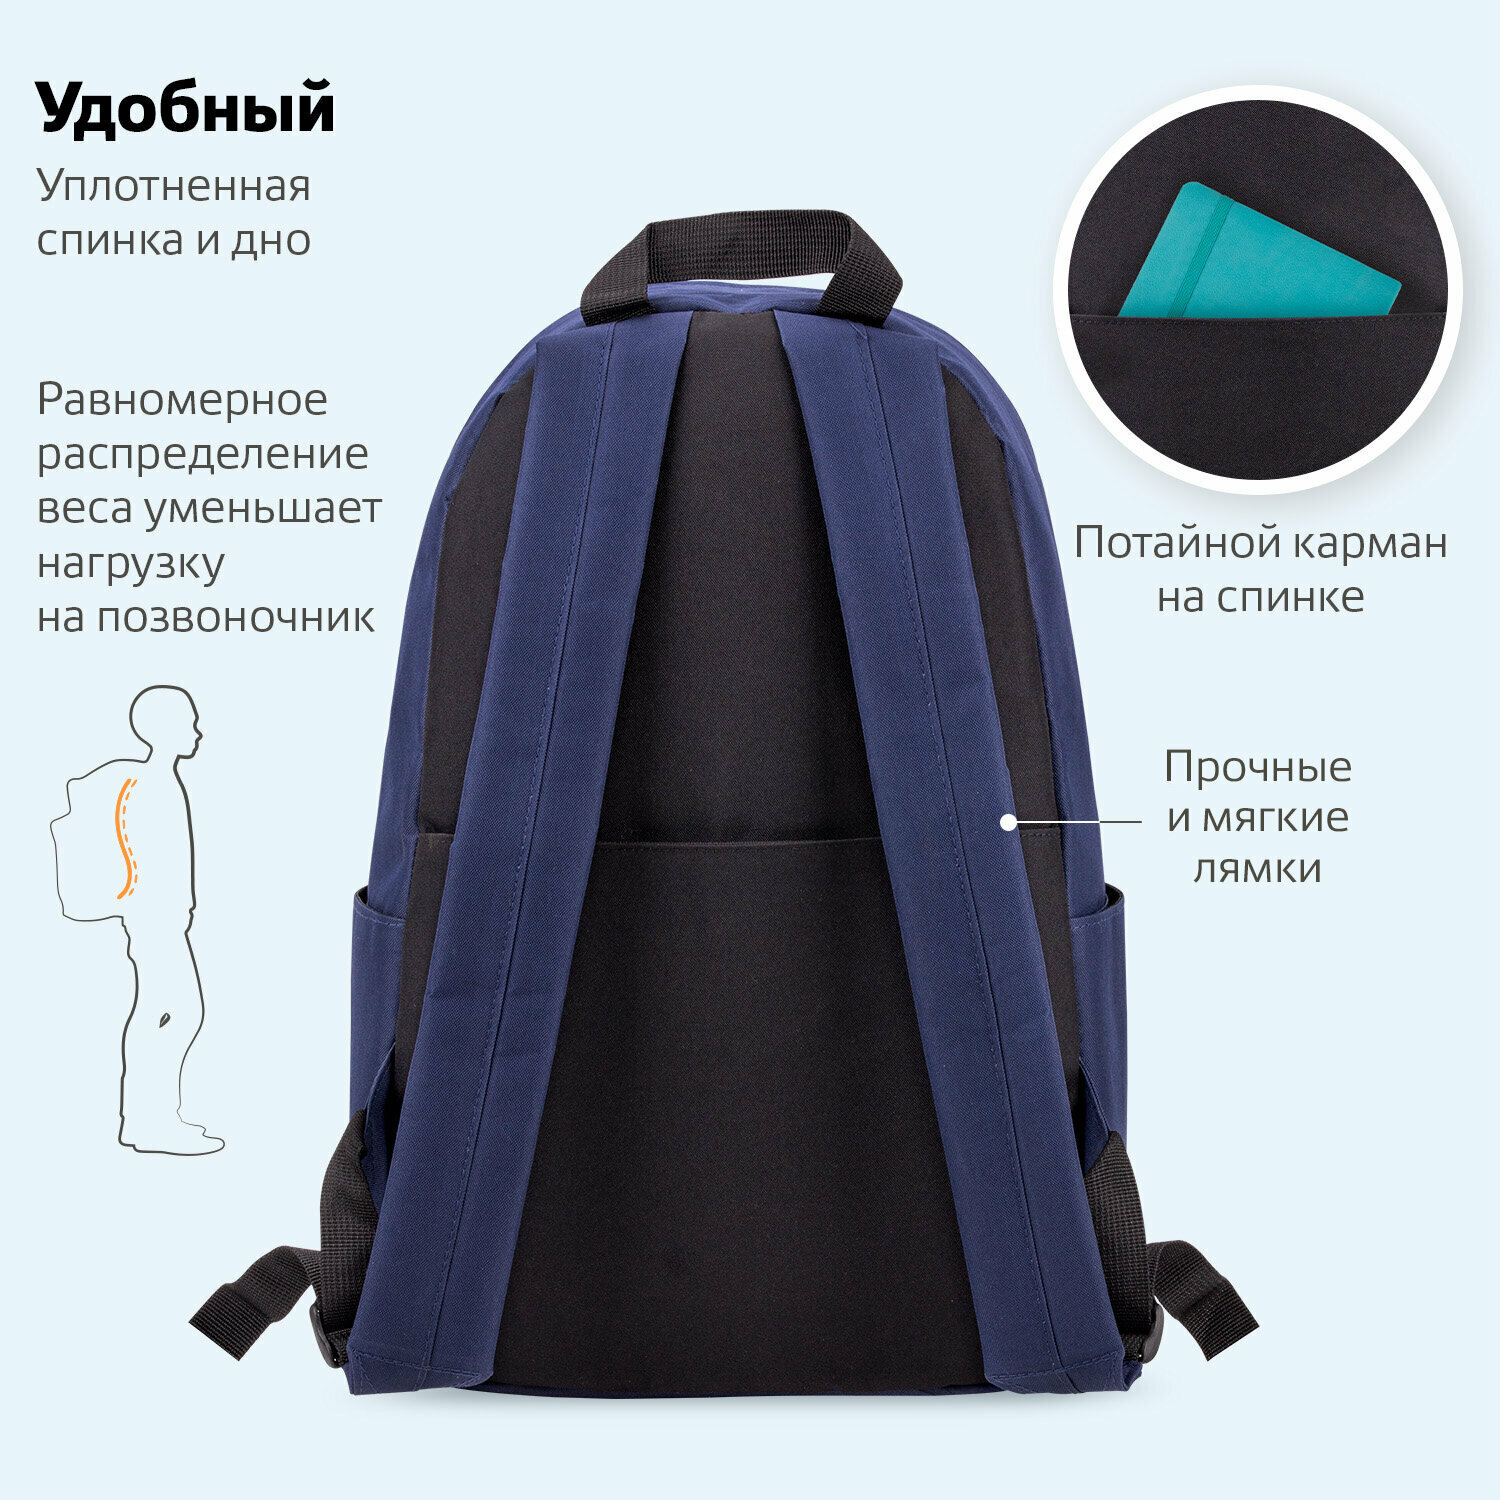 Рюкзак школьный для мальчика, Brauberg Positive универсальный, потайной карман, Dark blue, 42х28х14 см